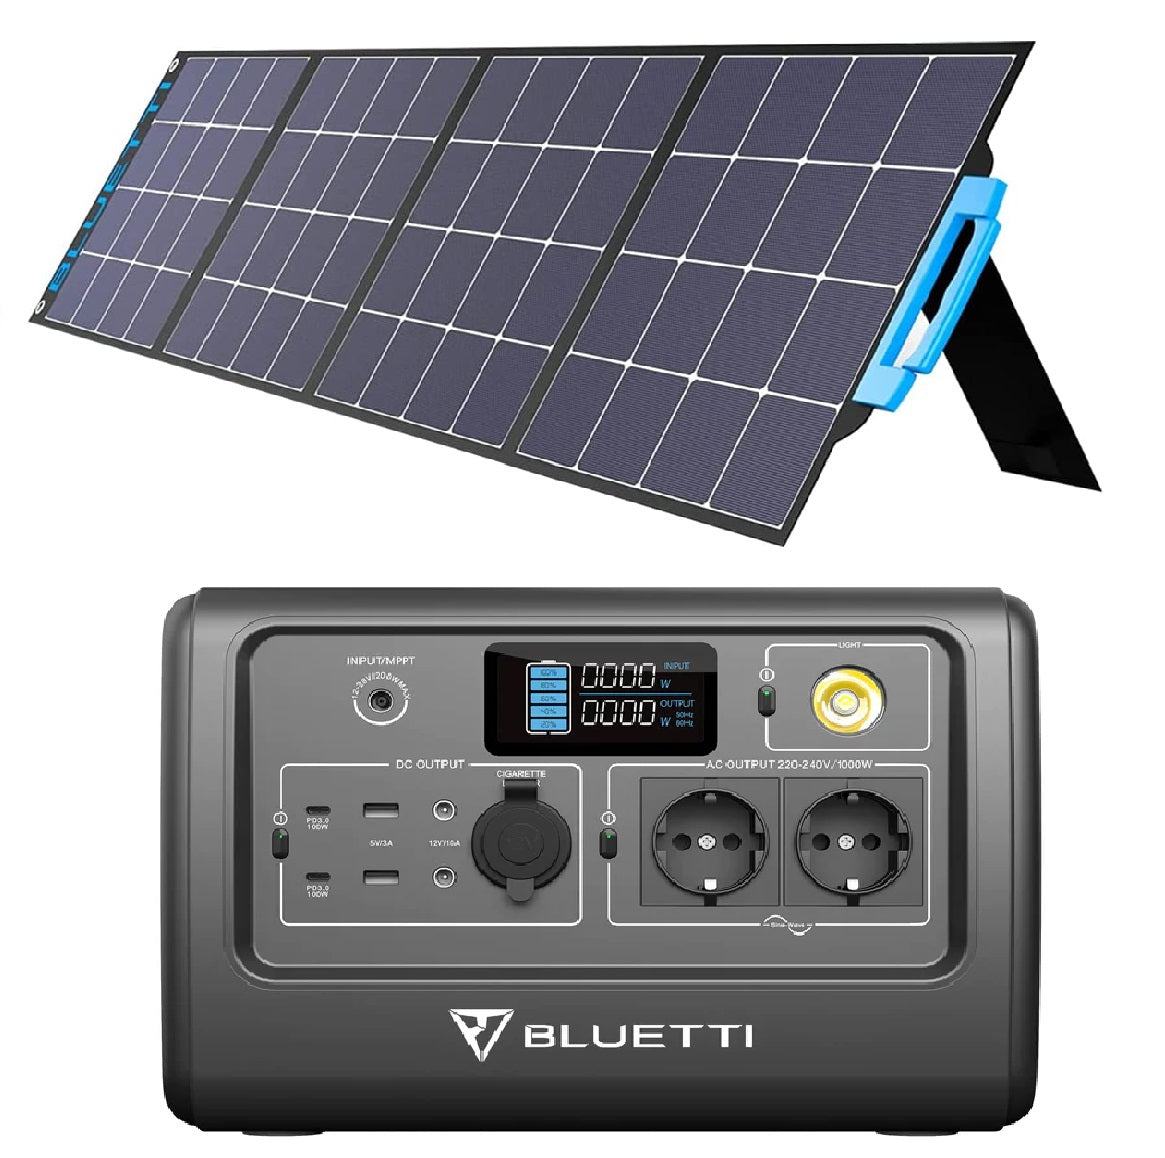 BLUETTI Generatore Solare EB70 e PV200 Pannello Solare,716Wh